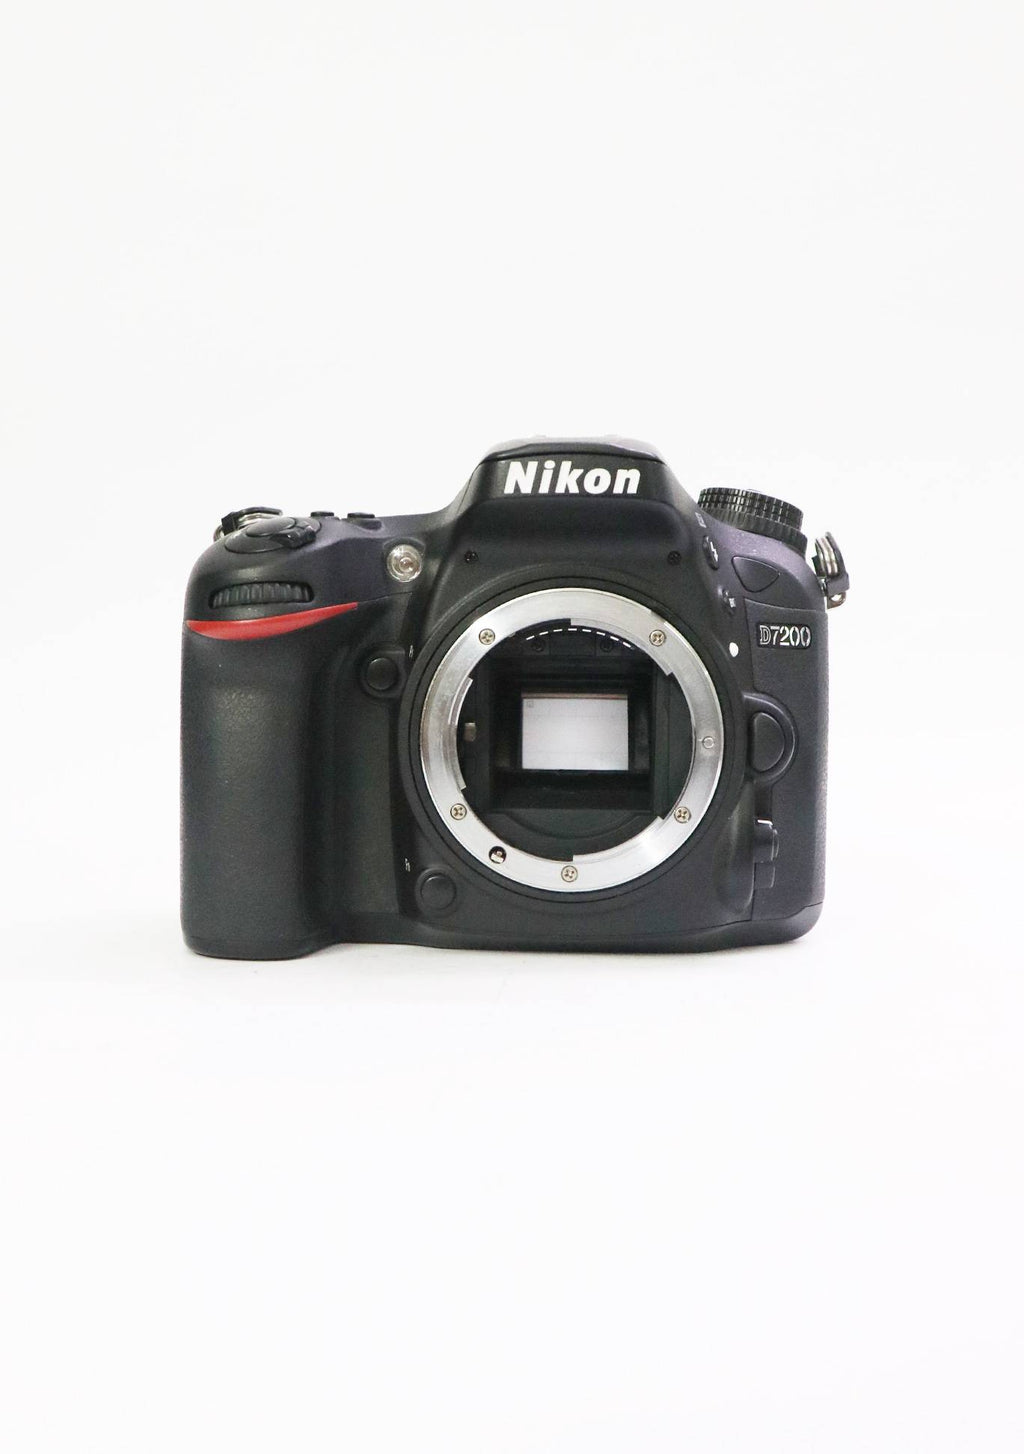 Used Nikon D7200 24.2 MP Digital SLR Camera Black with AF-S 18-140mm